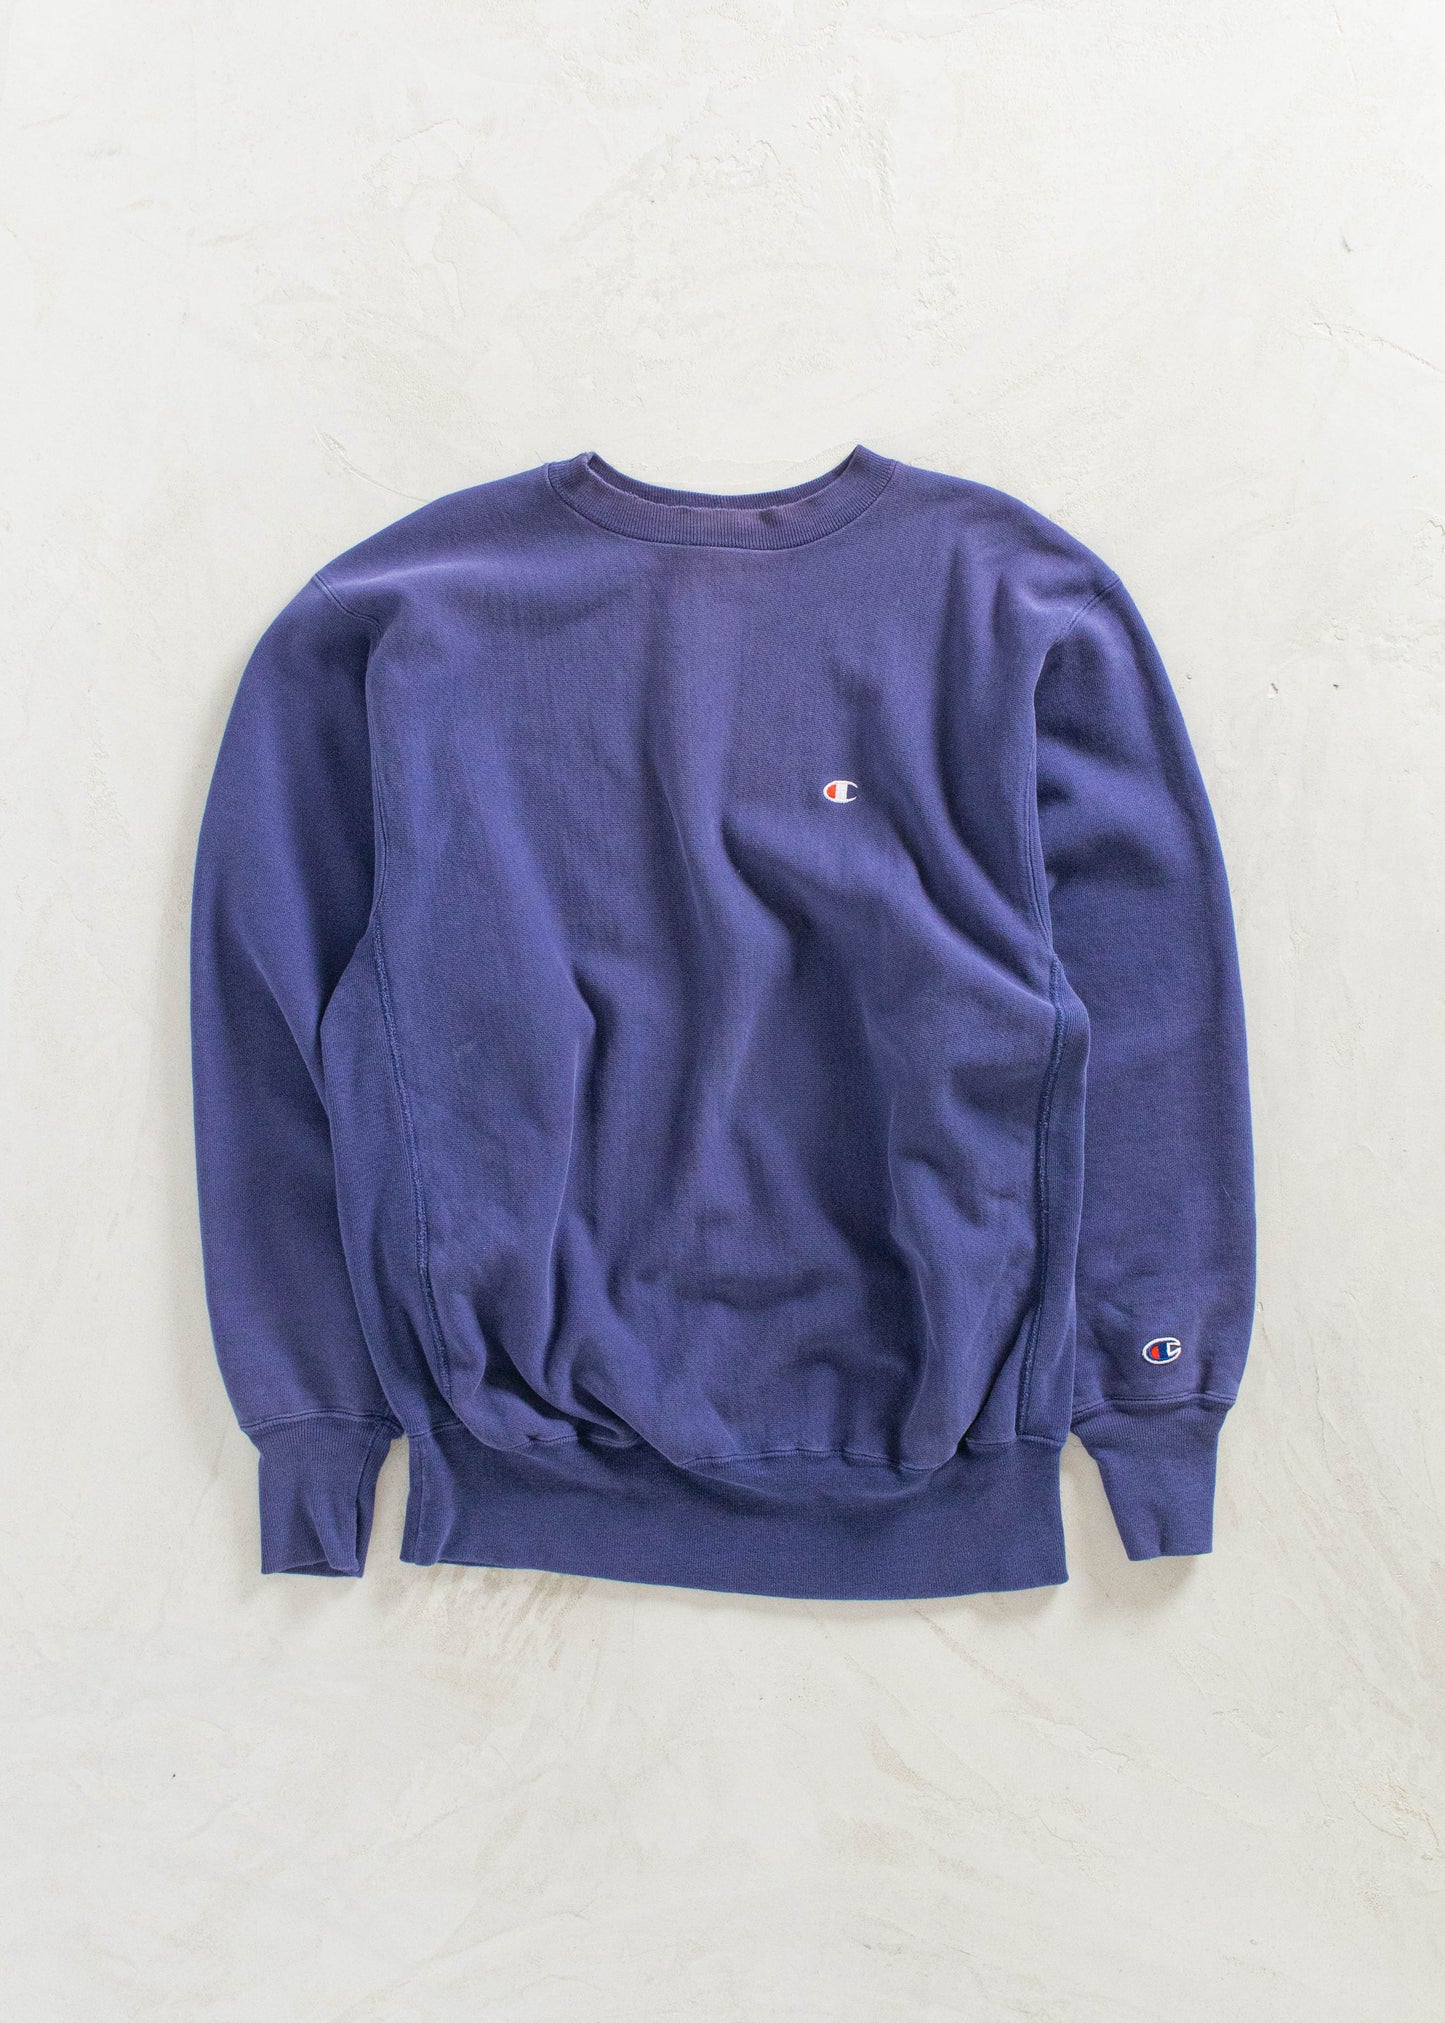 Vintage 1990s Champion Reverse Weave Blue Sweatshirt Size M/L